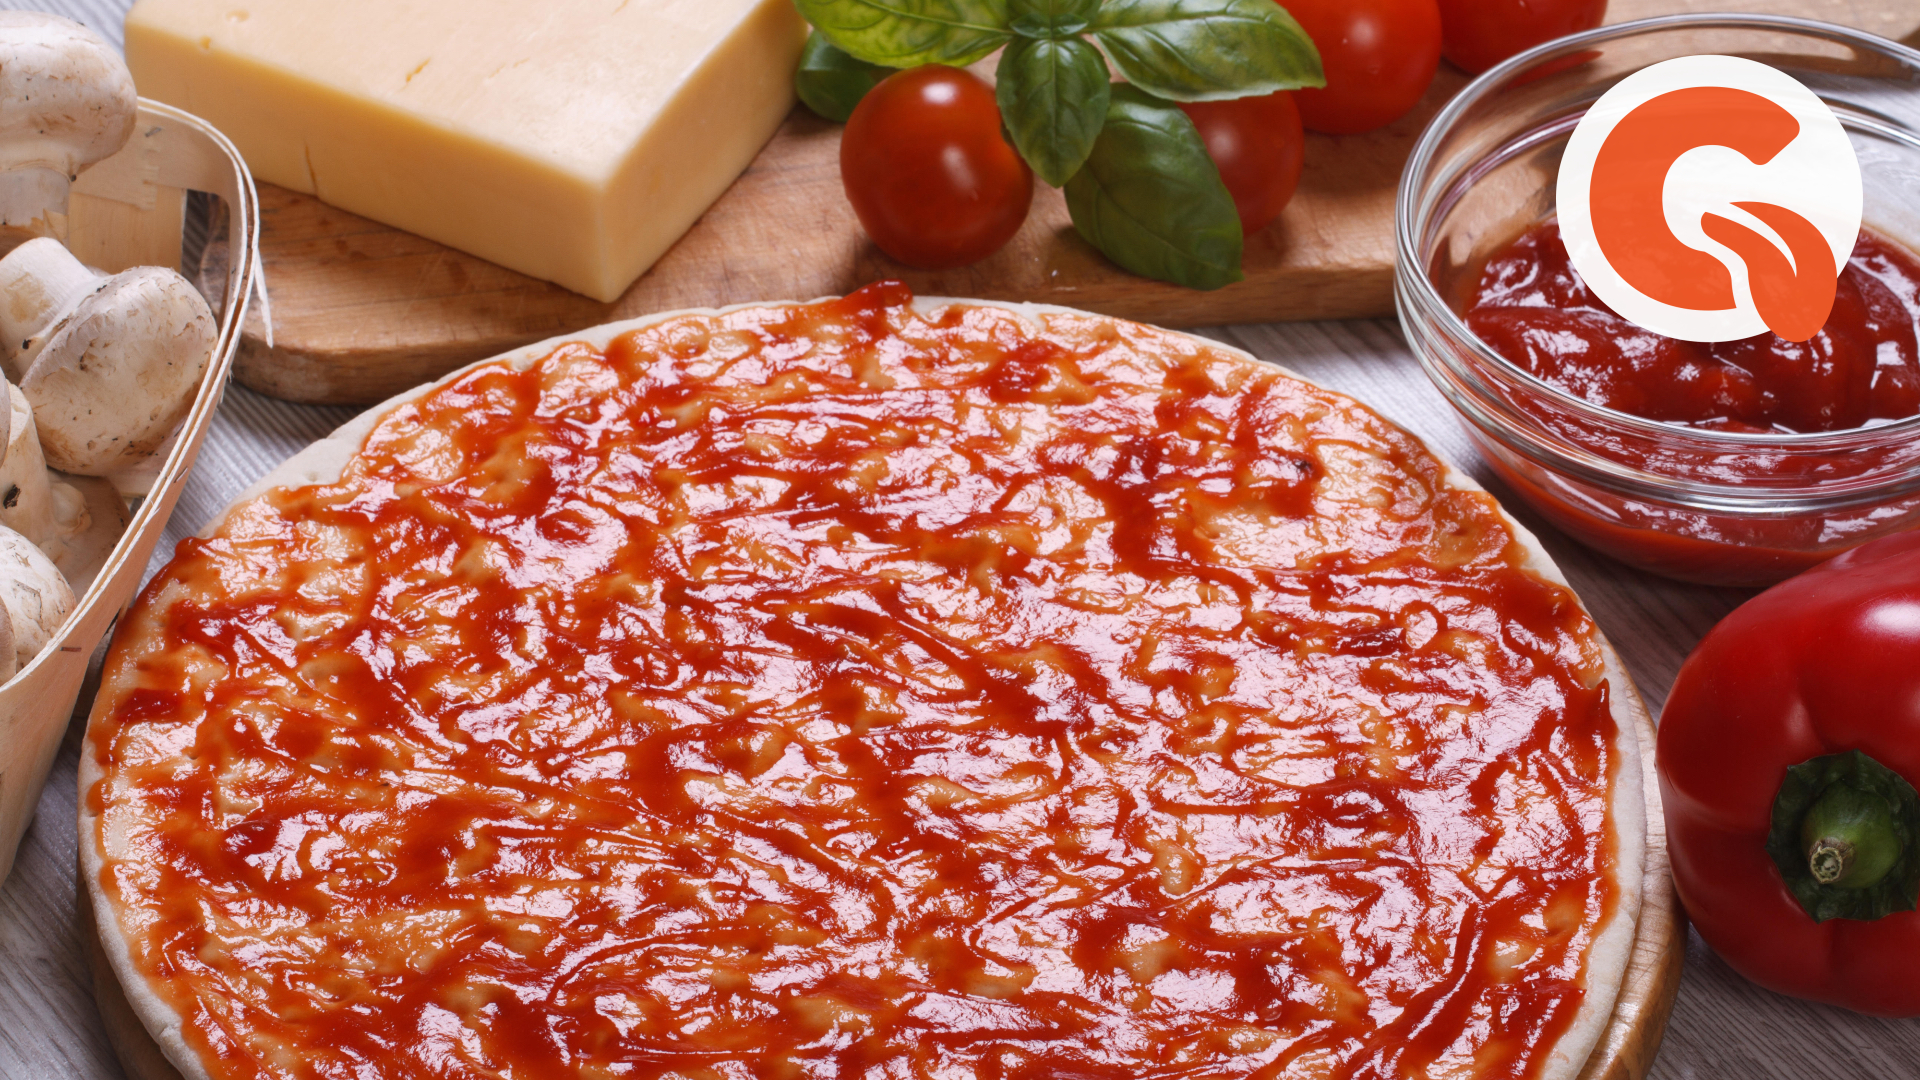 томатный соус для пиццы рецепт в домашних условиях фото 10